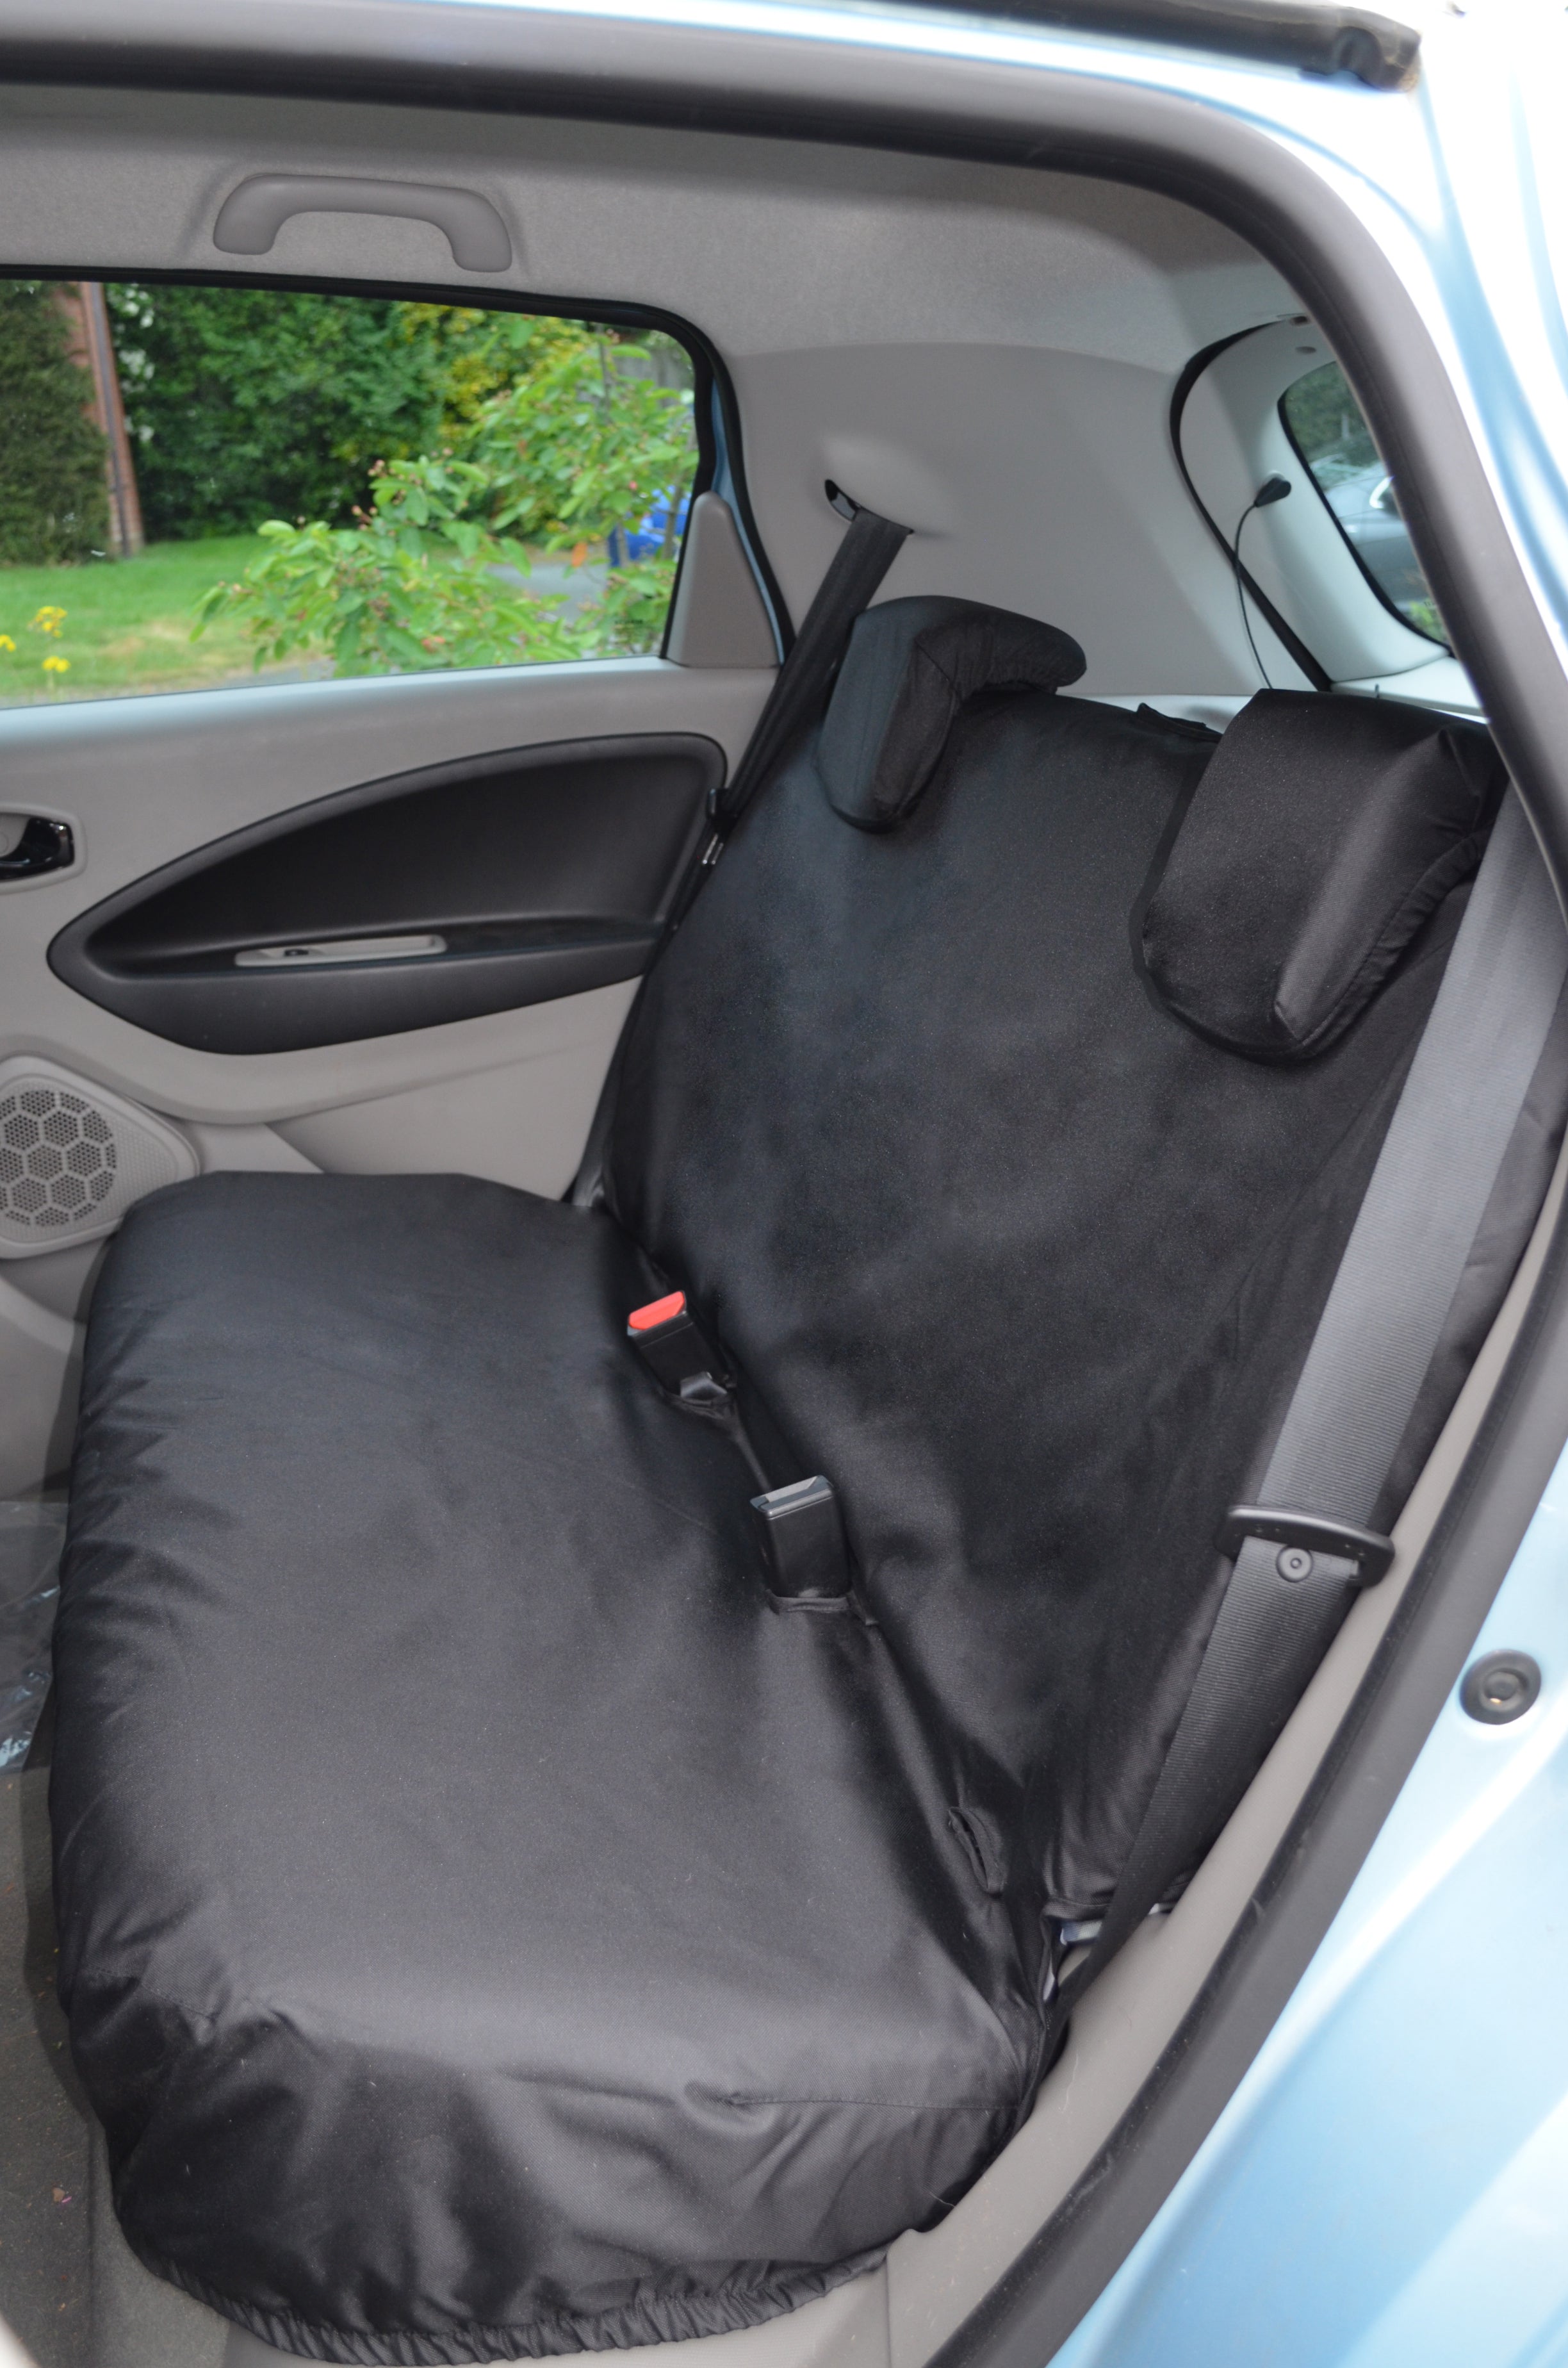 Outdoor car cover fits Renault Zoe 100% waterproof now $ 220